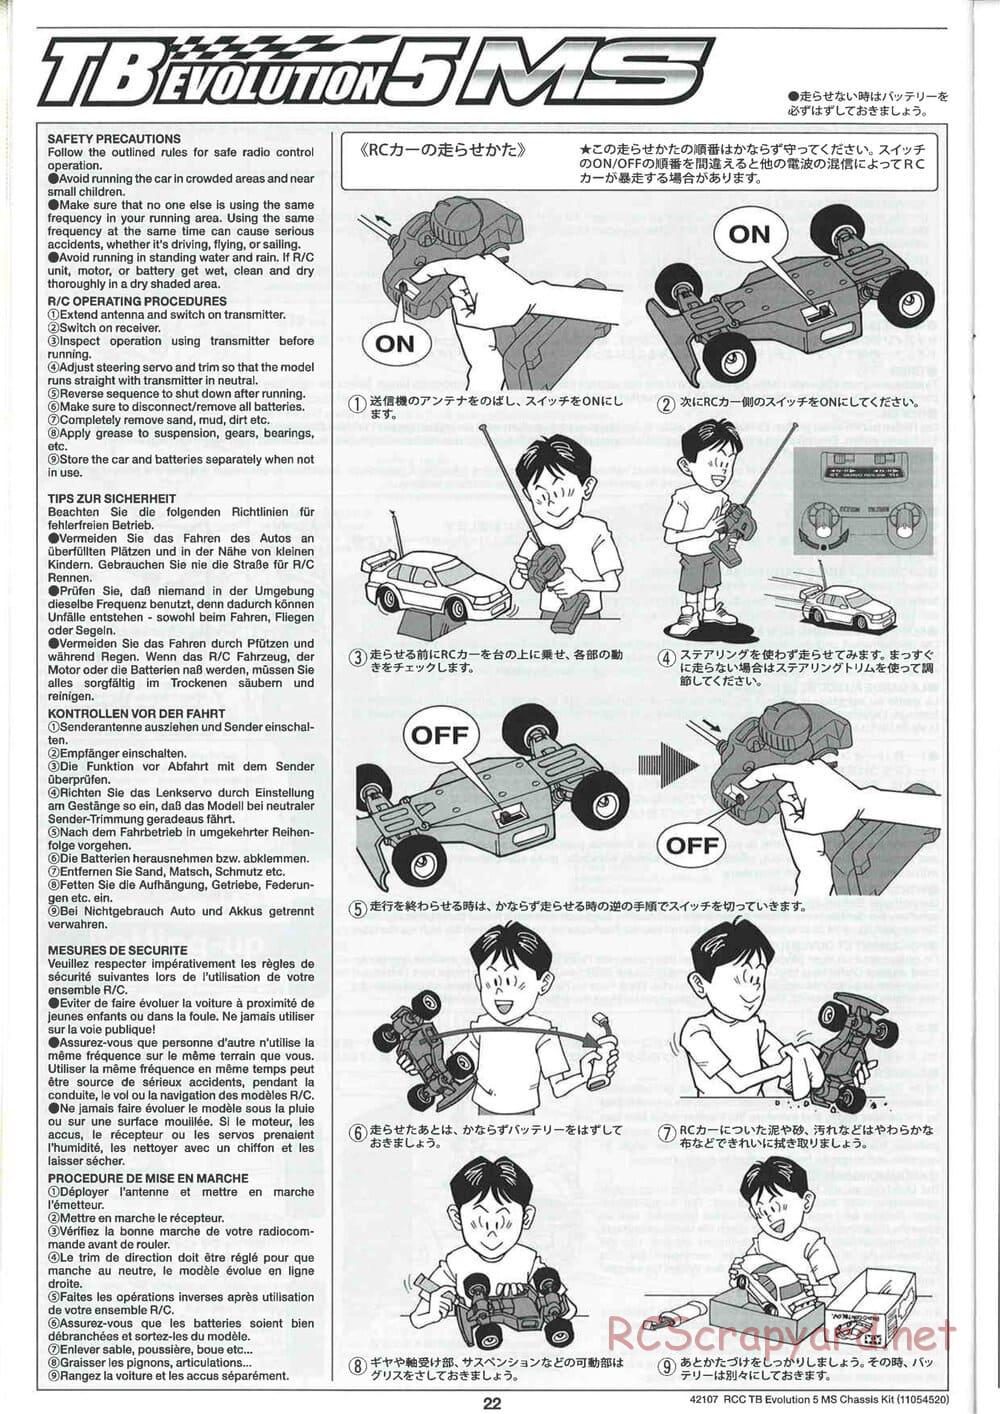 Tamiya - TB Evolution 5 MS Chassis - Manual - Page 22